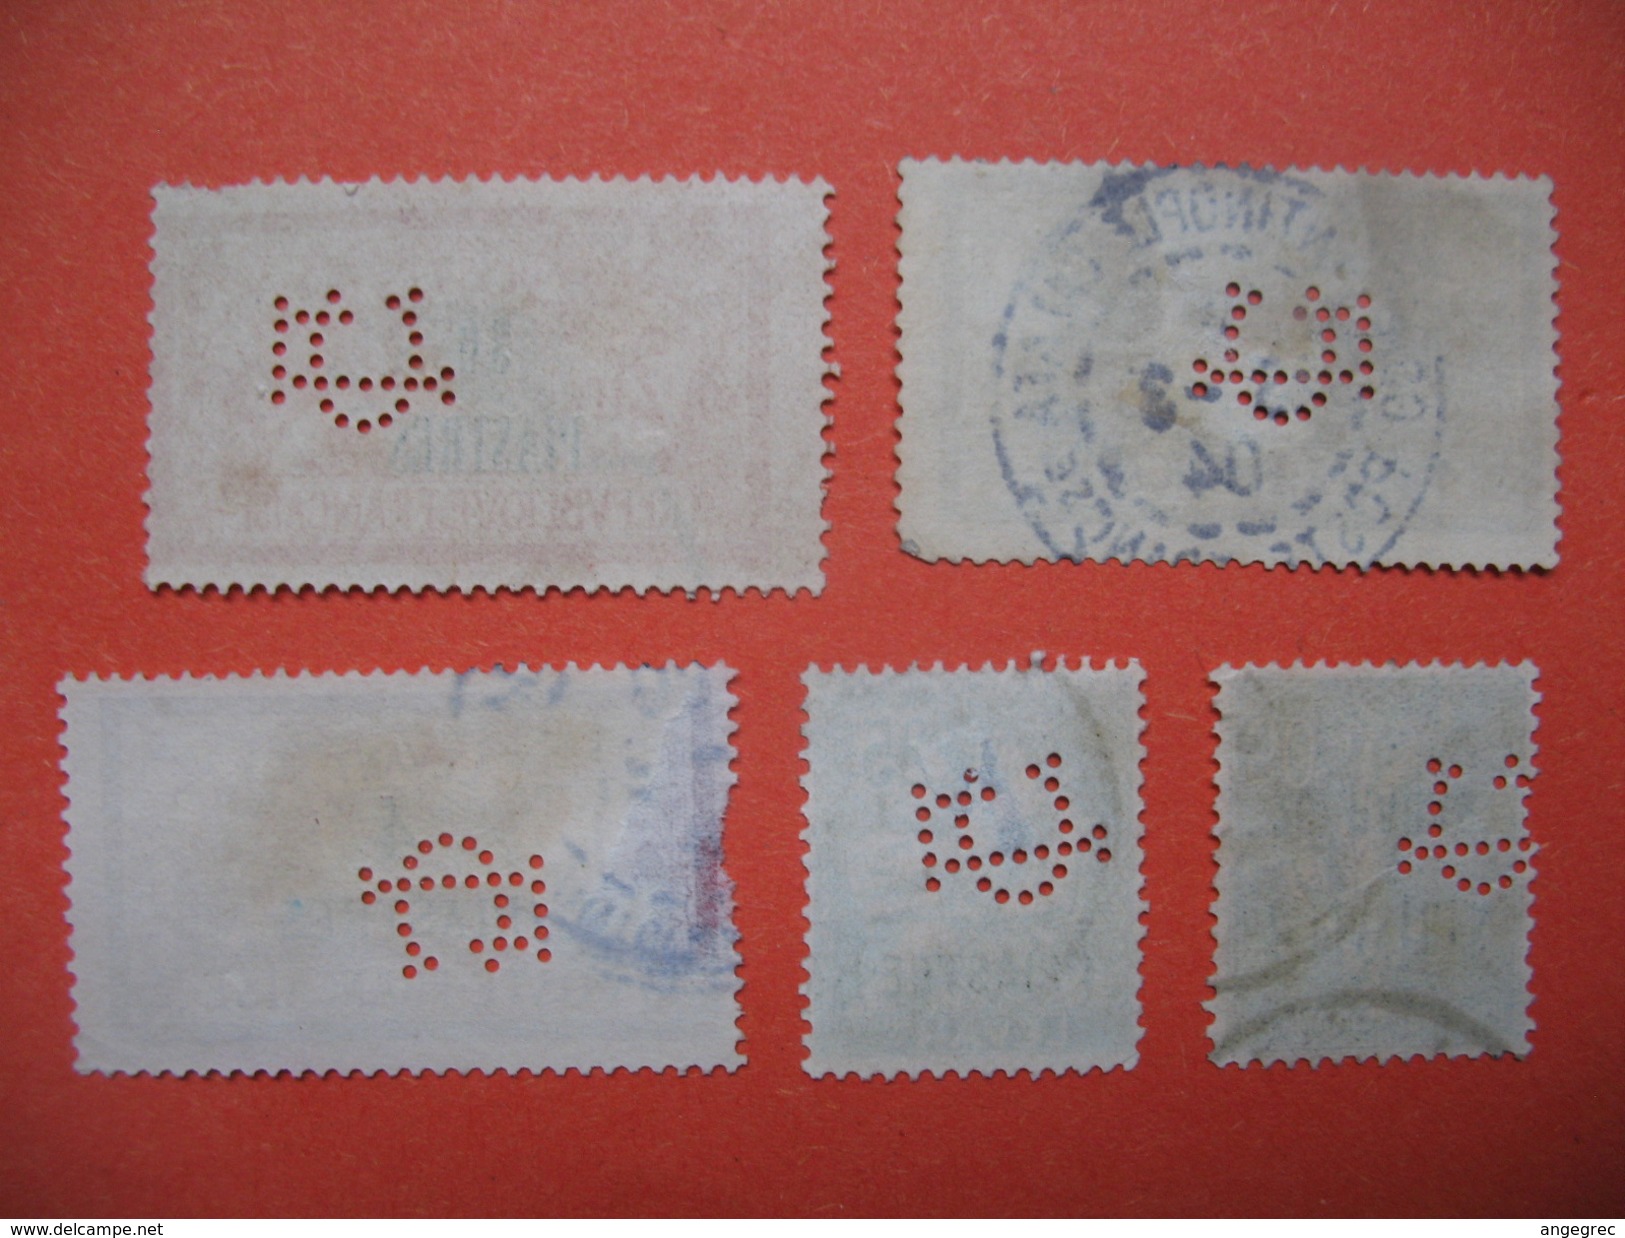 Perforé  Perfin Levant,  Lot De Timbre Perforé De Perforation : C5  à Voir - Used Stamps